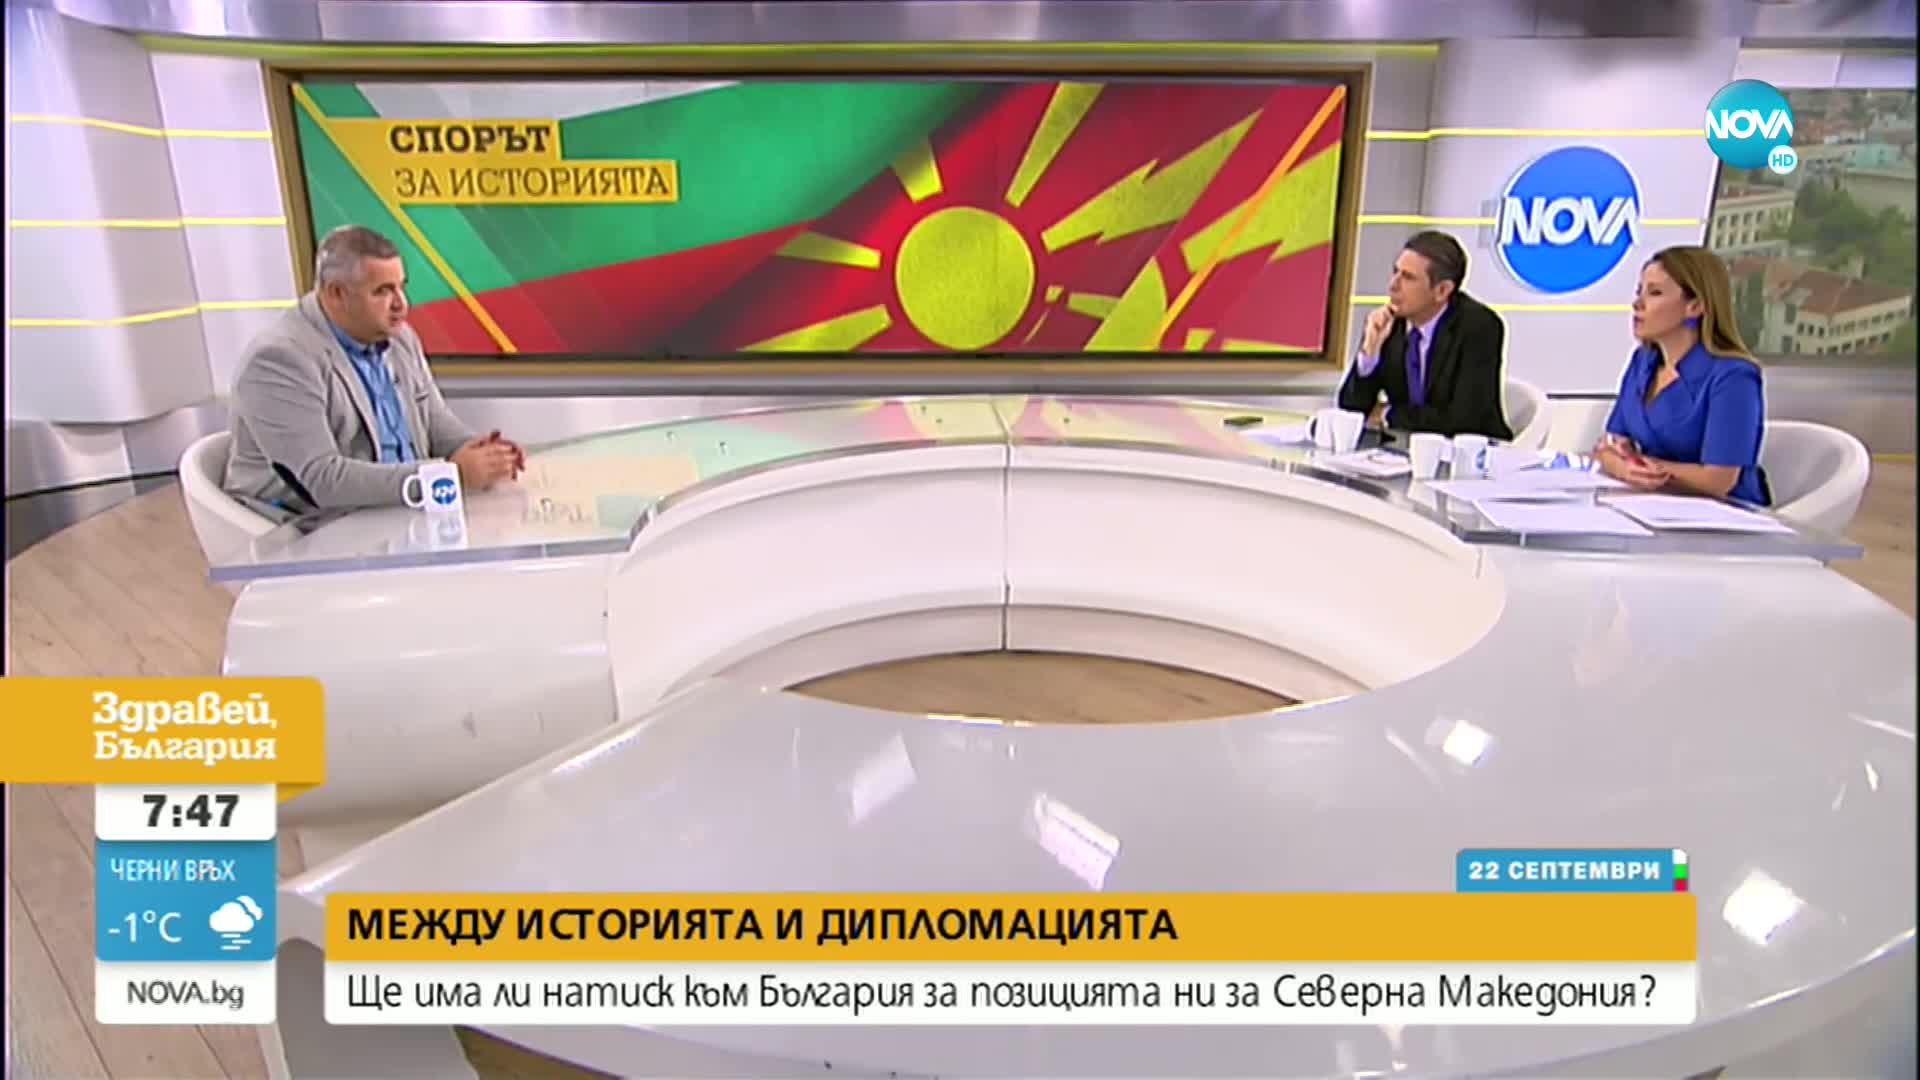 Доц. Ташев: Позицията, която България възприе спрямо Скопие, е правилна